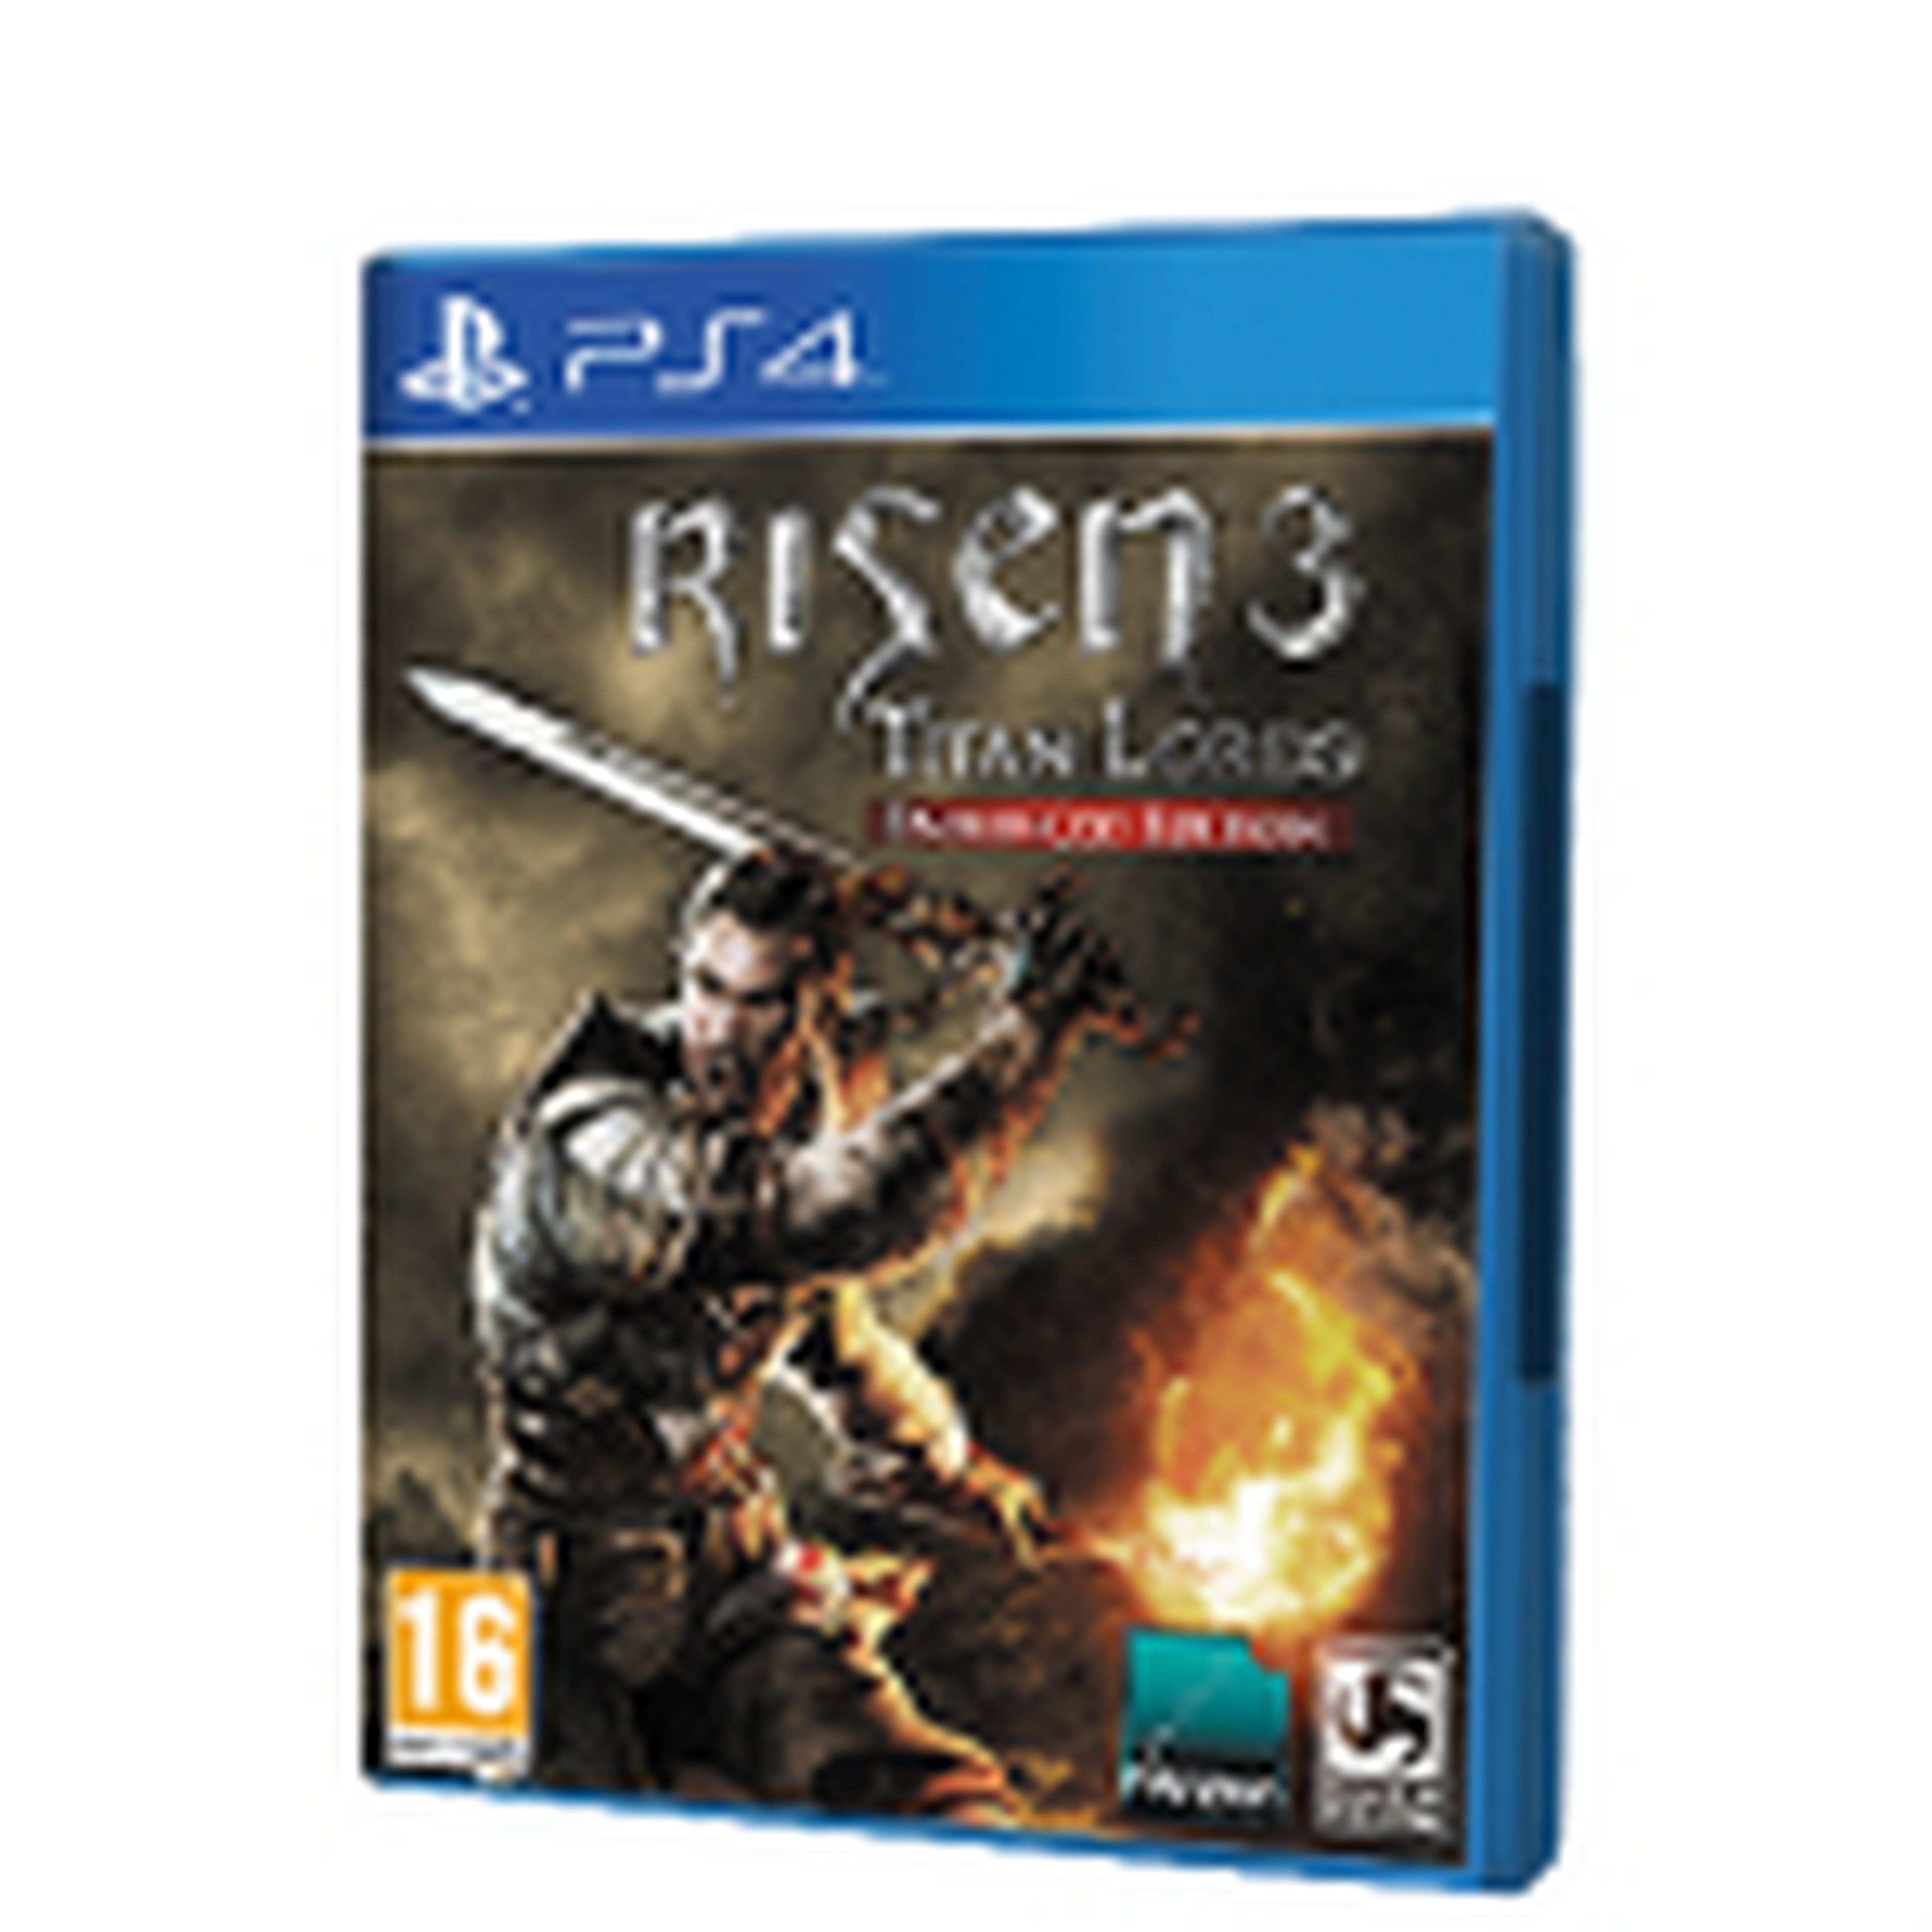 Risen 3: Titan Lords - Enhanced Edition para PS4